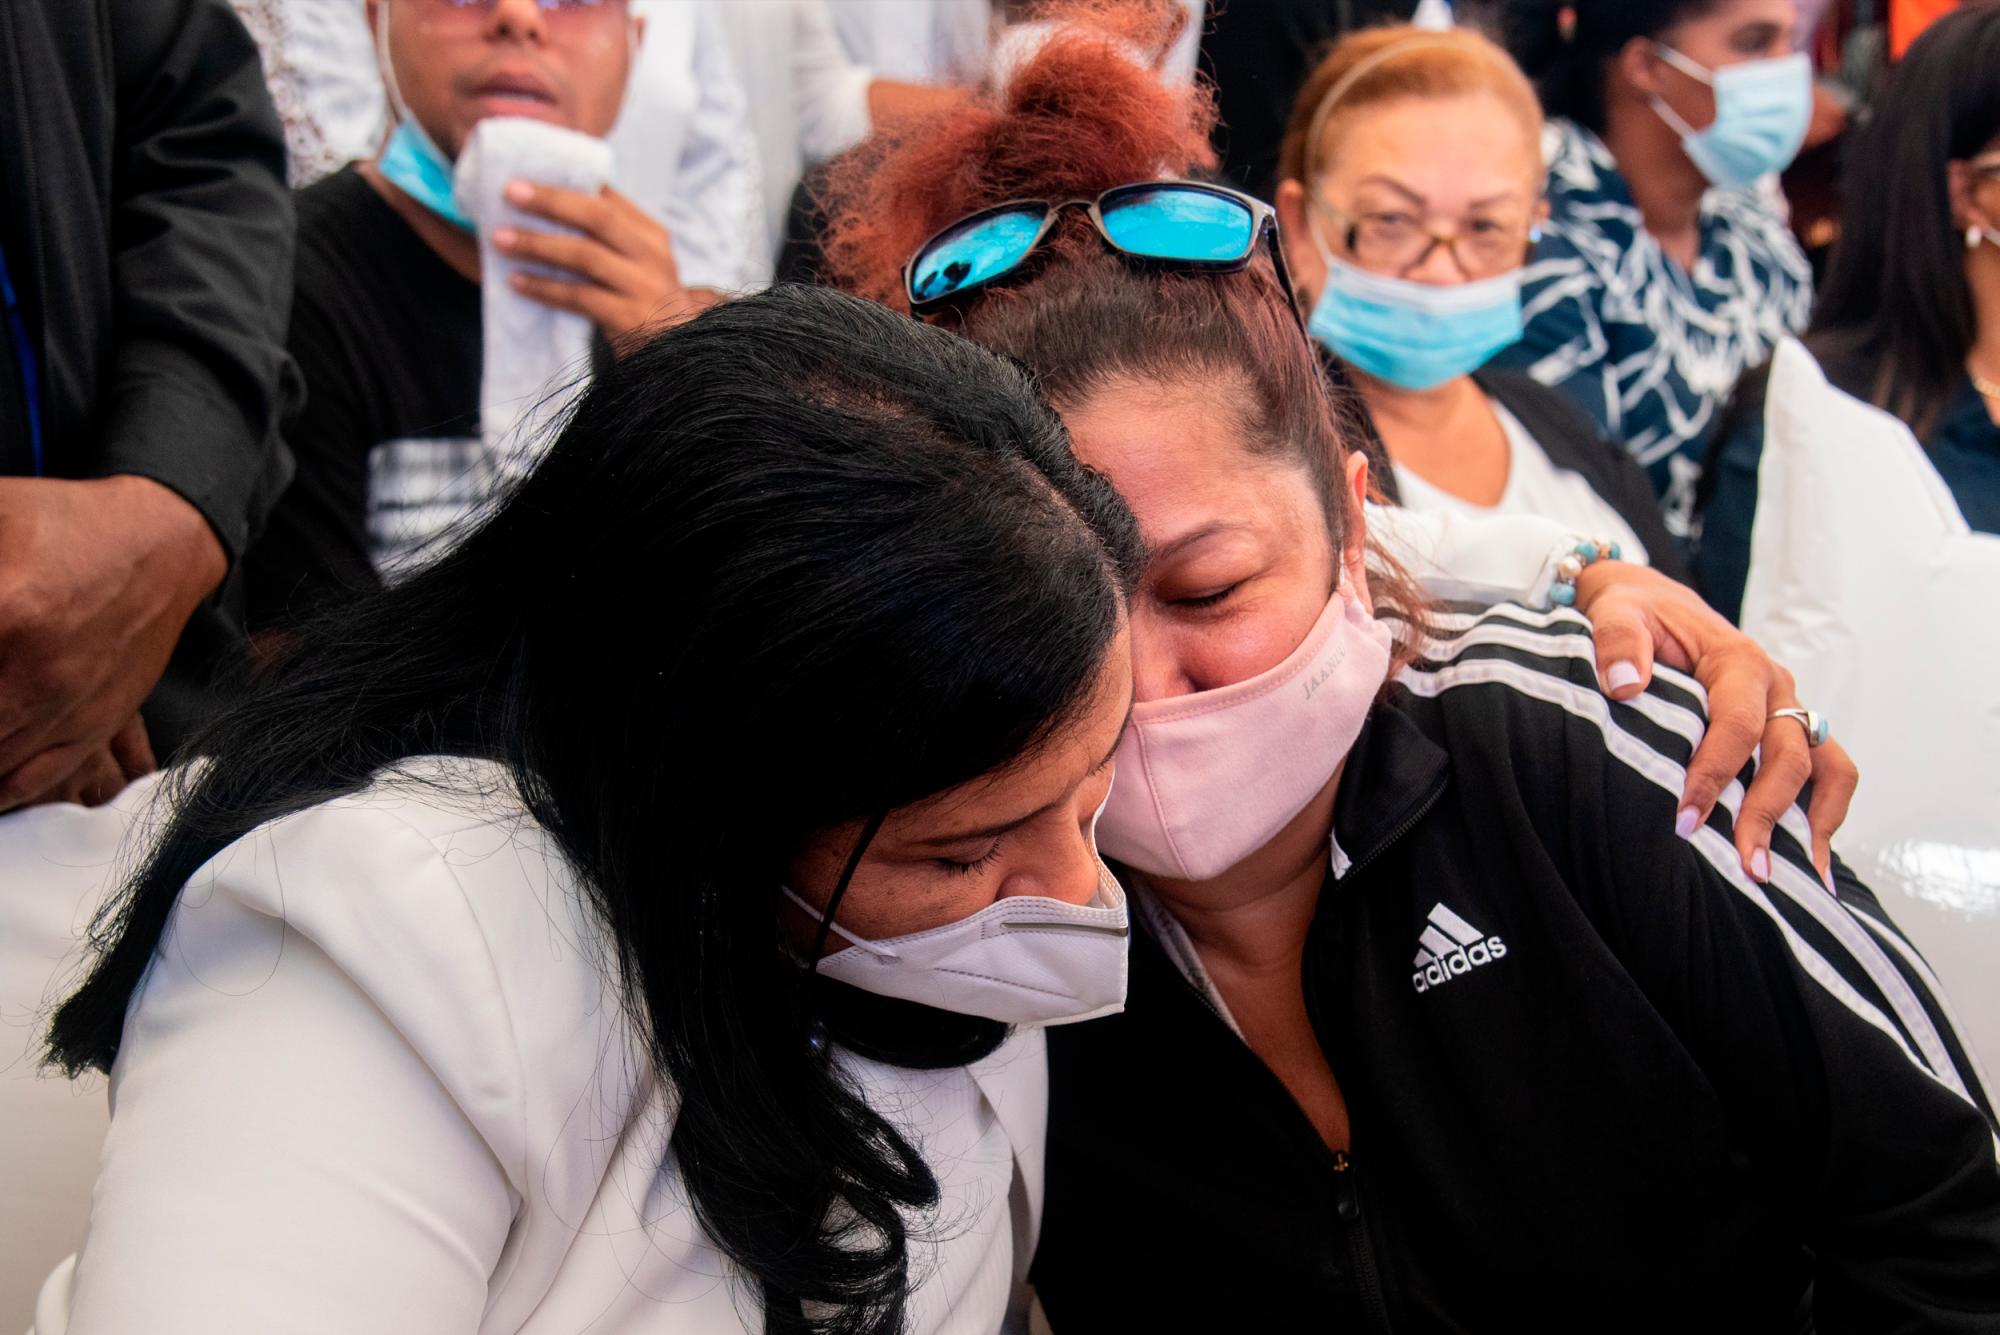 La madre de Elisa Muñoz recibió numerosas muestras de apoyo y solidaridad durante el sepelio de su hija y yerno. (Juan Miguel Peña / Diario Libre)